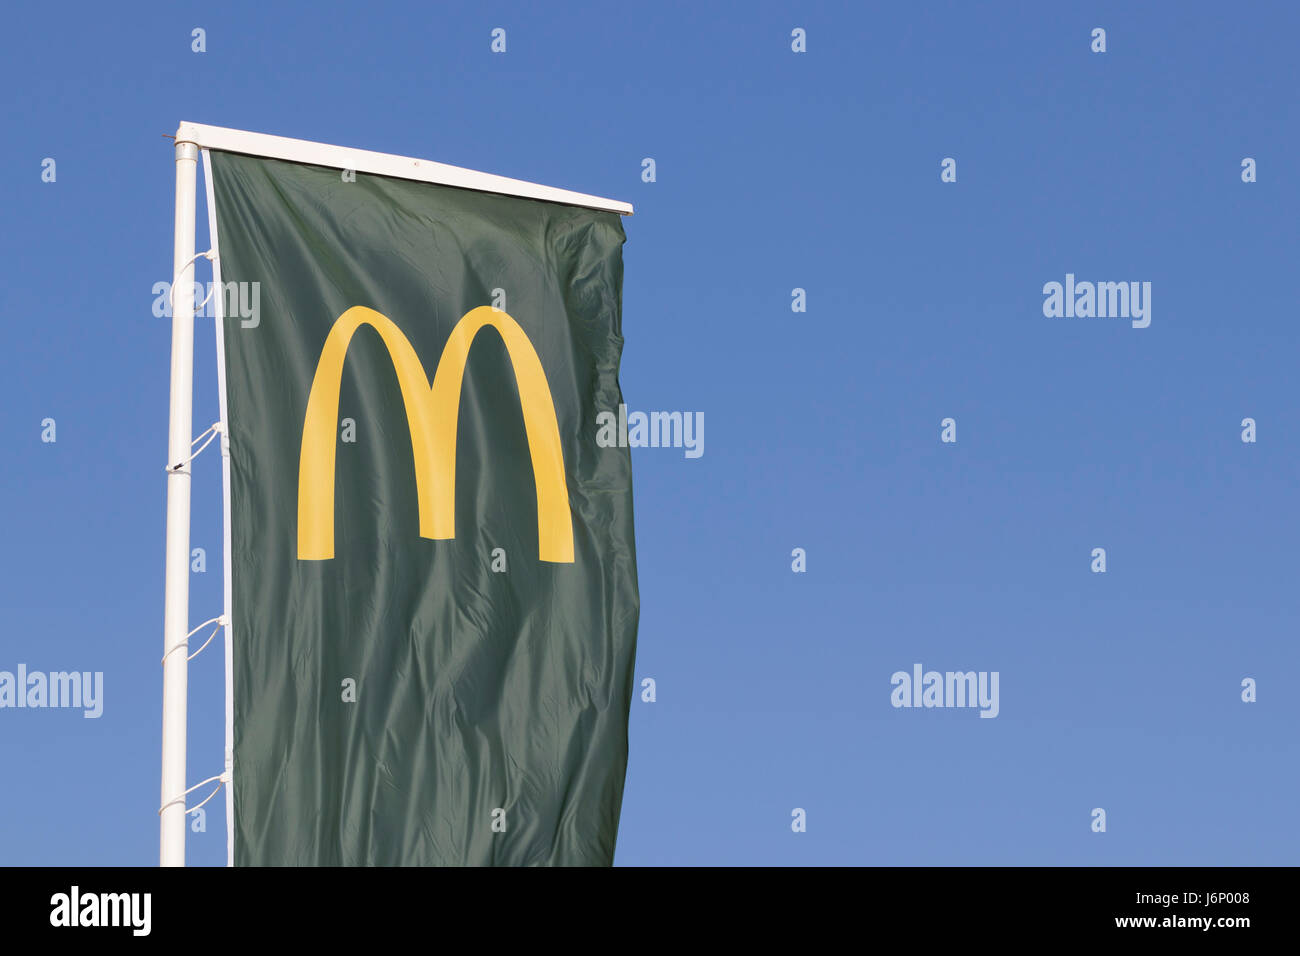 Mcdonald's food corporation logo dans un drapeau vert. Banque D'Images